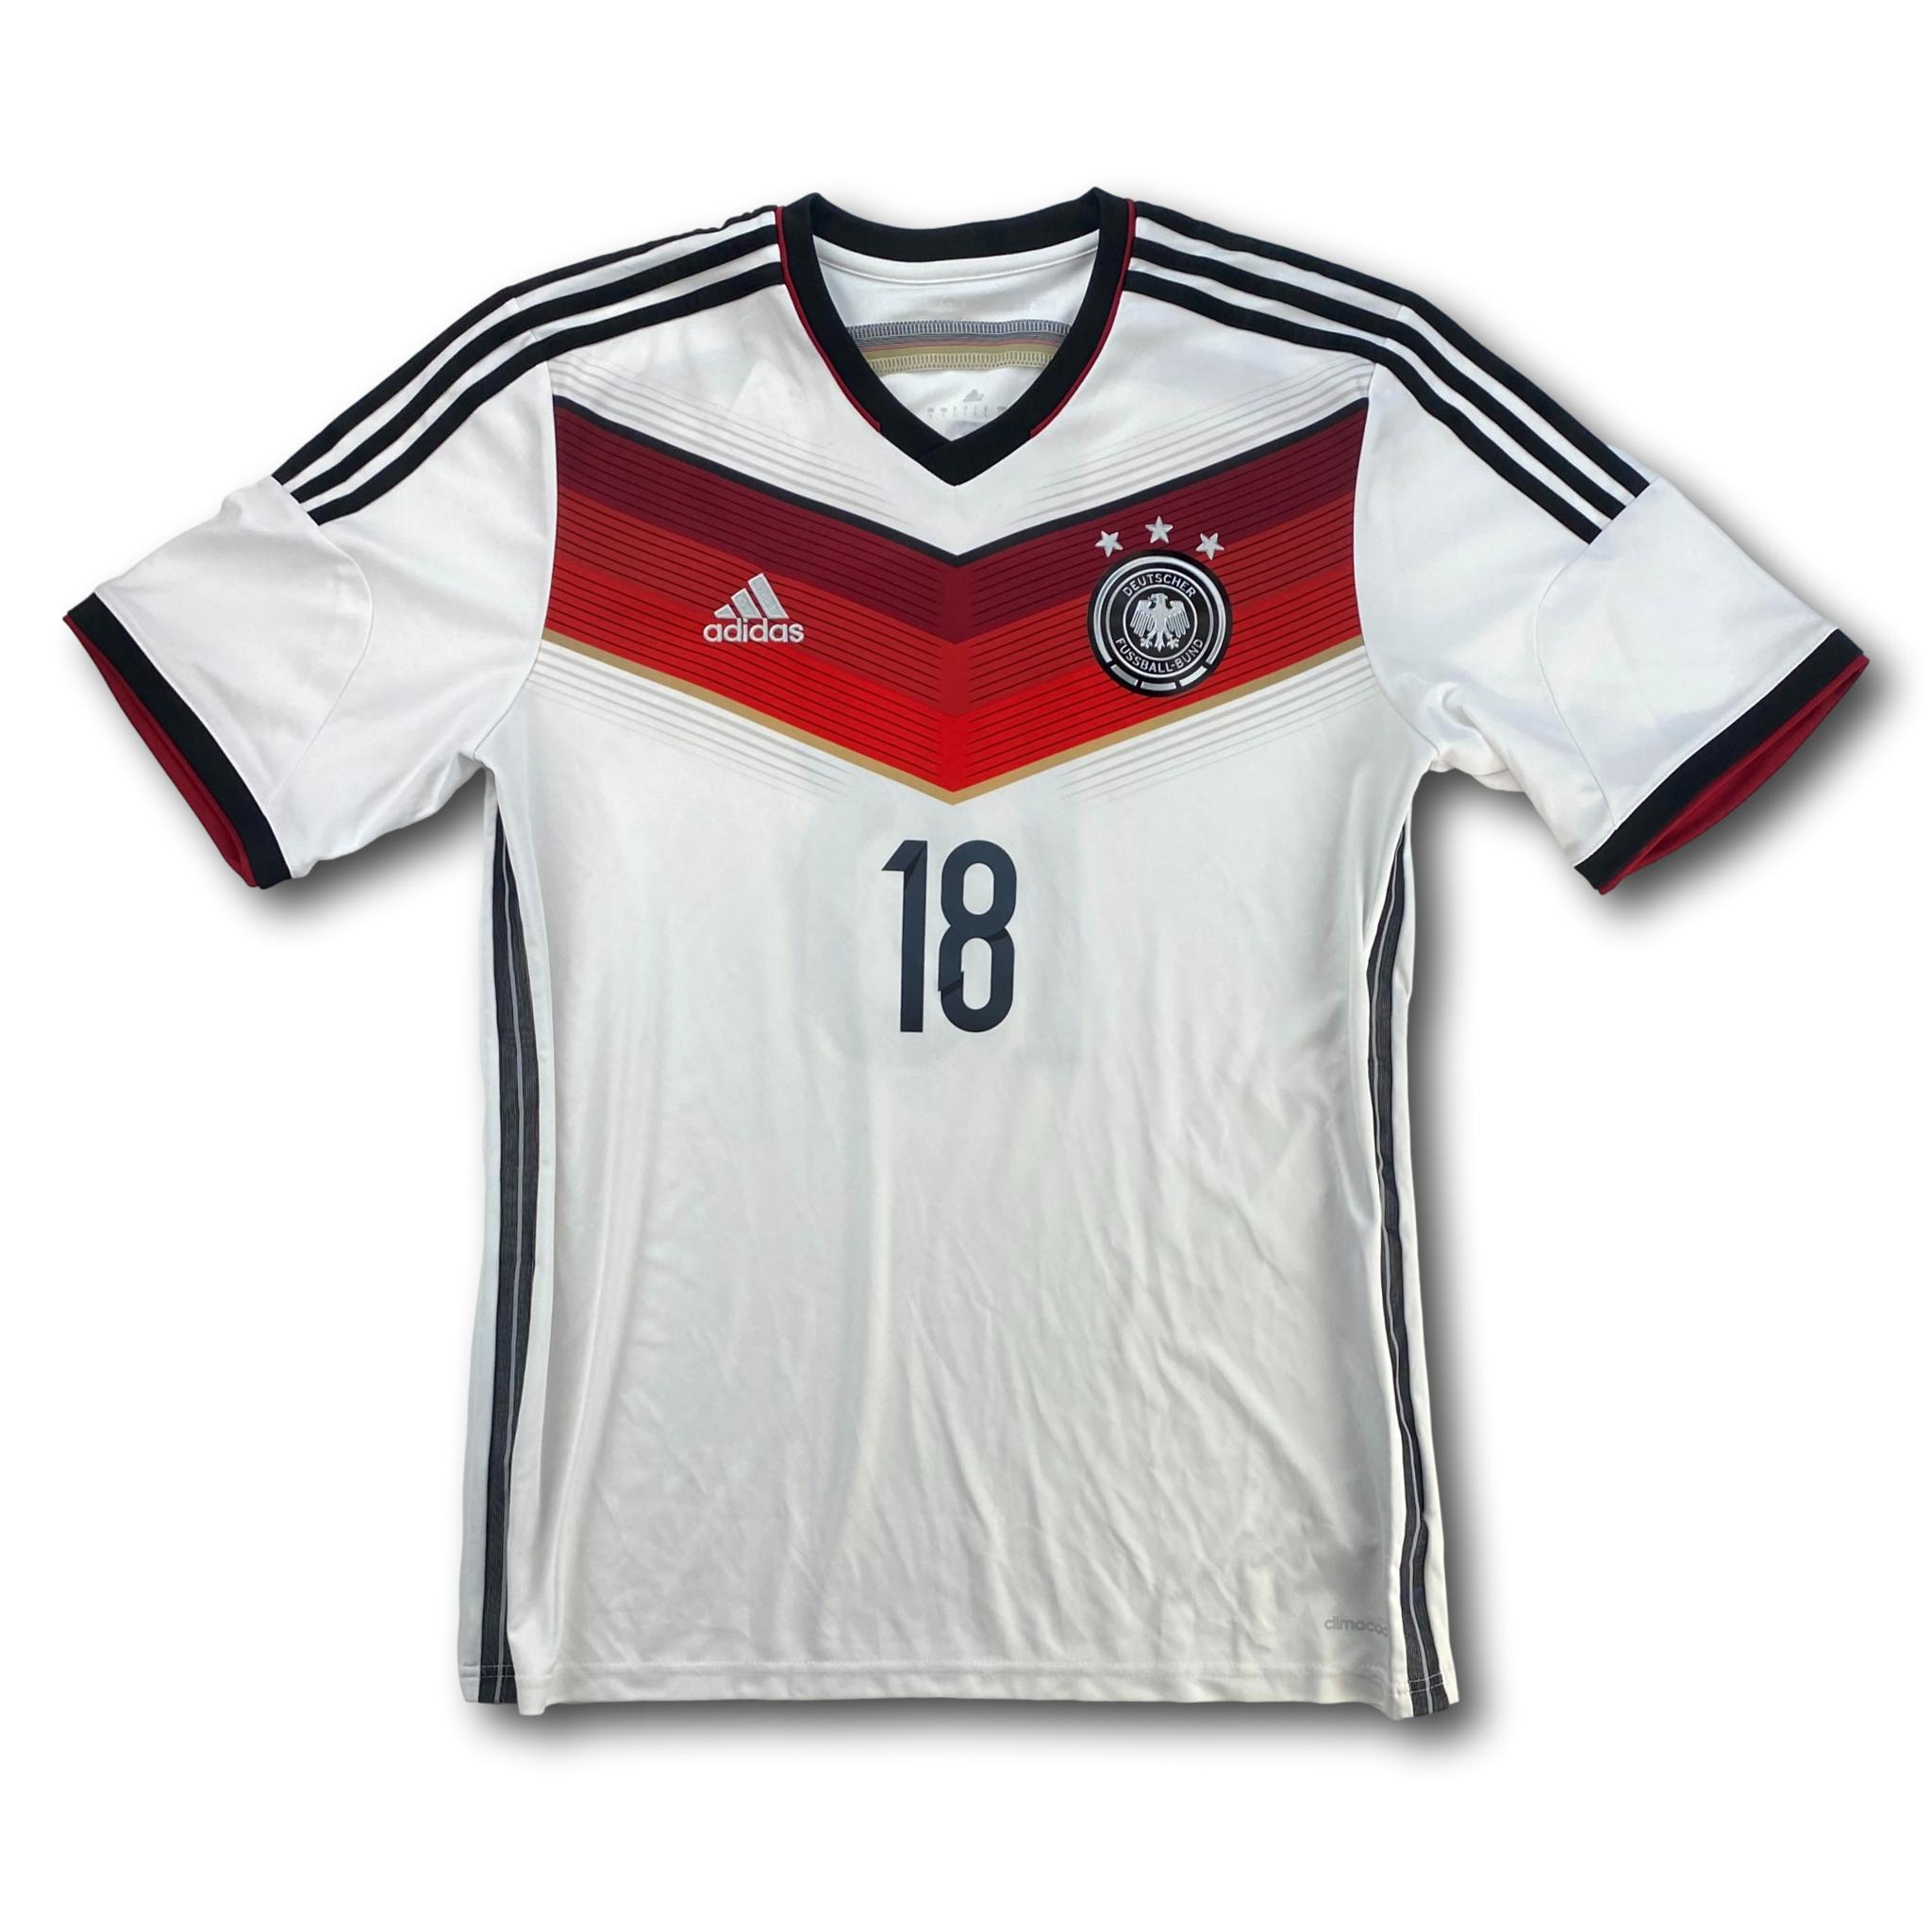 Deutschland 2014 Heim L adidas